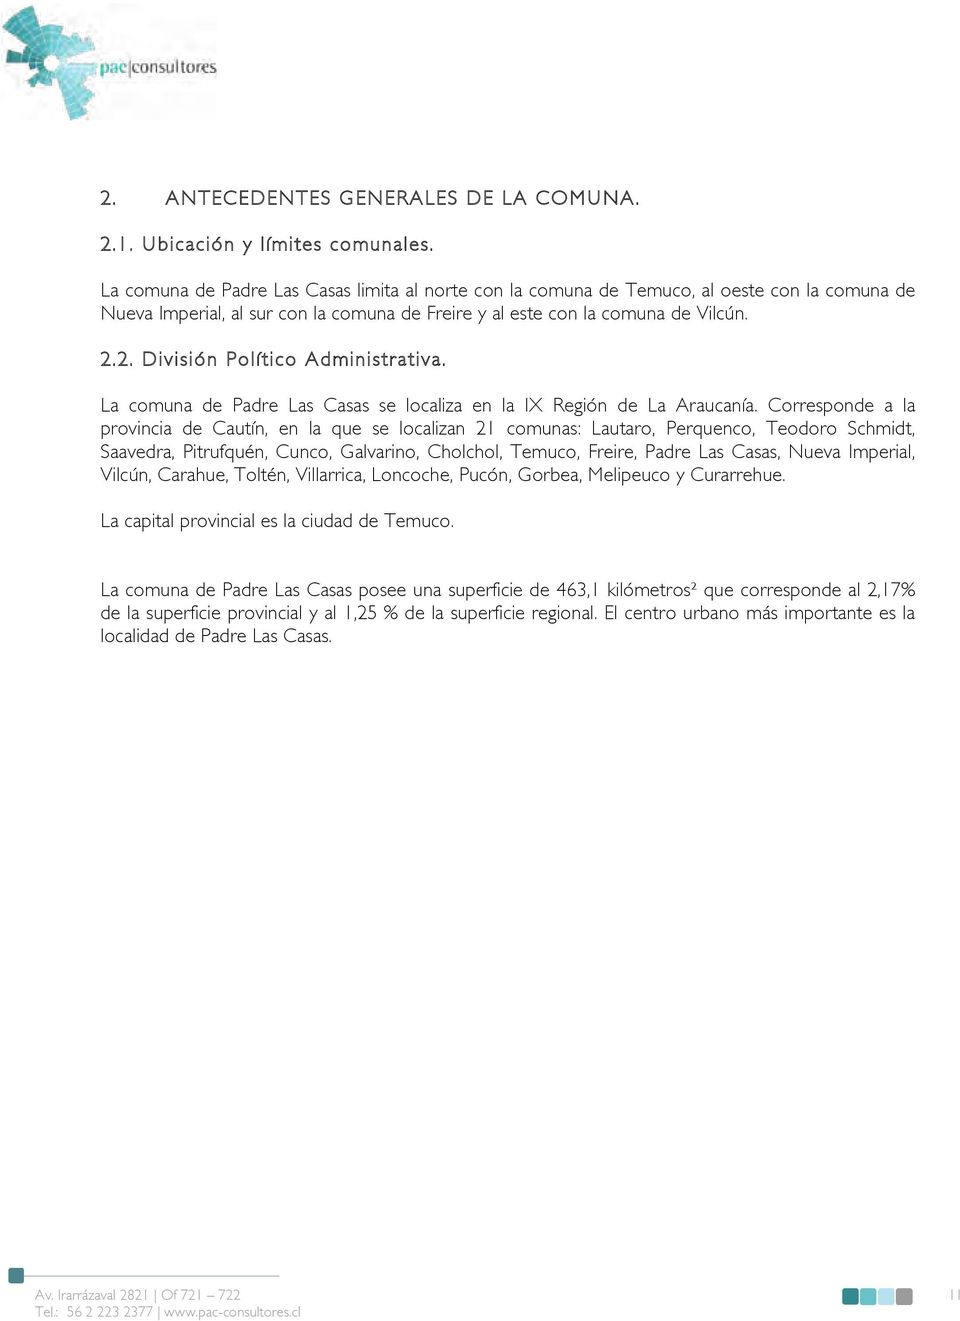 2. División Político Administrativa. La comuna de Padre Las Casas se localiza en la IX Región de La Araucanía.